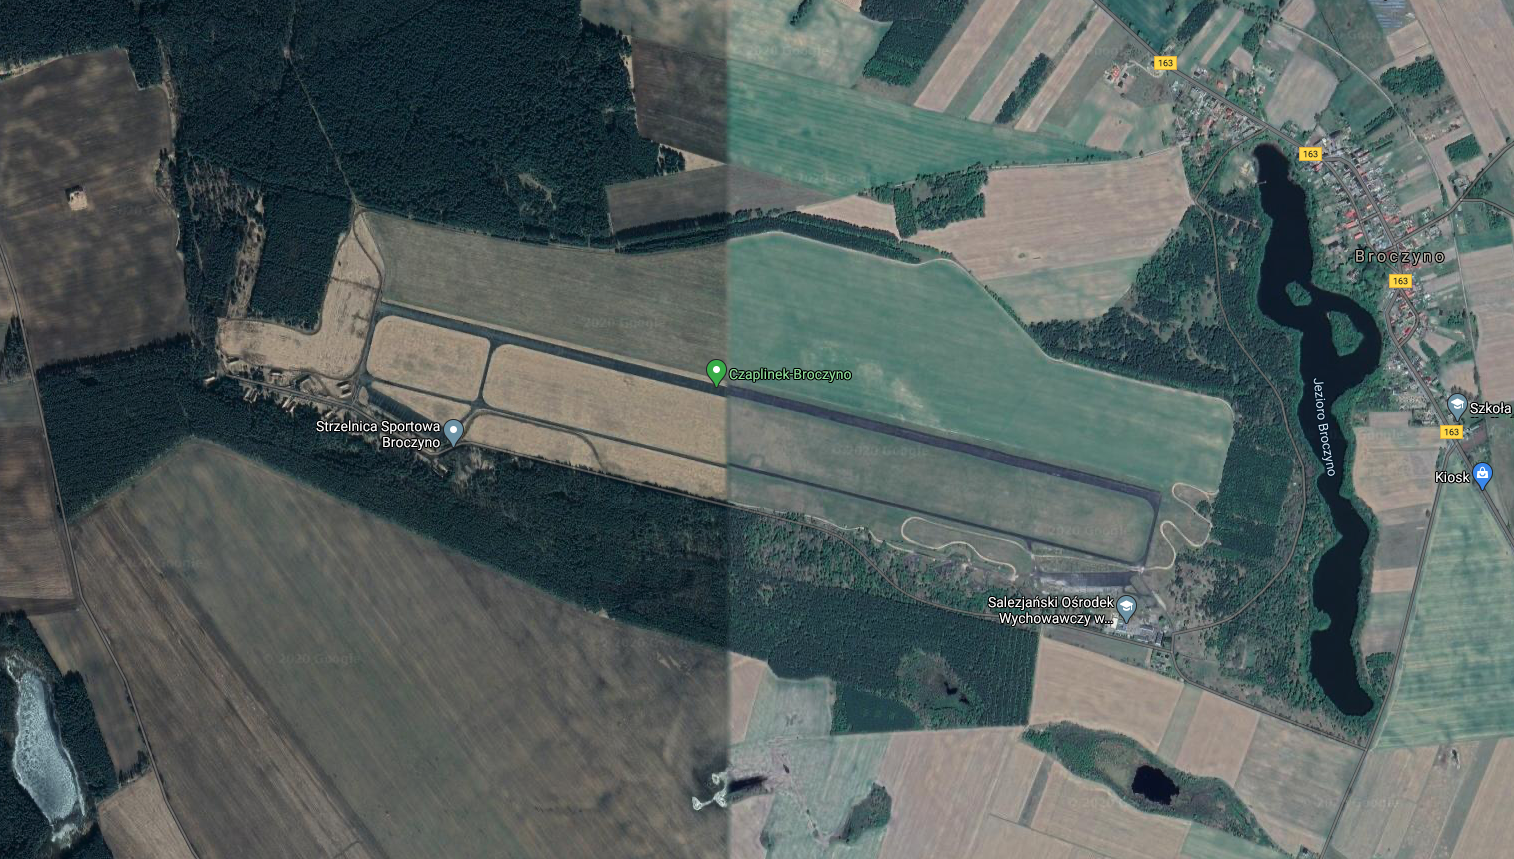 Lotnisko Czaplinek, Broczyno widok z satelity. 2018
rok. Zdjęcie LAC